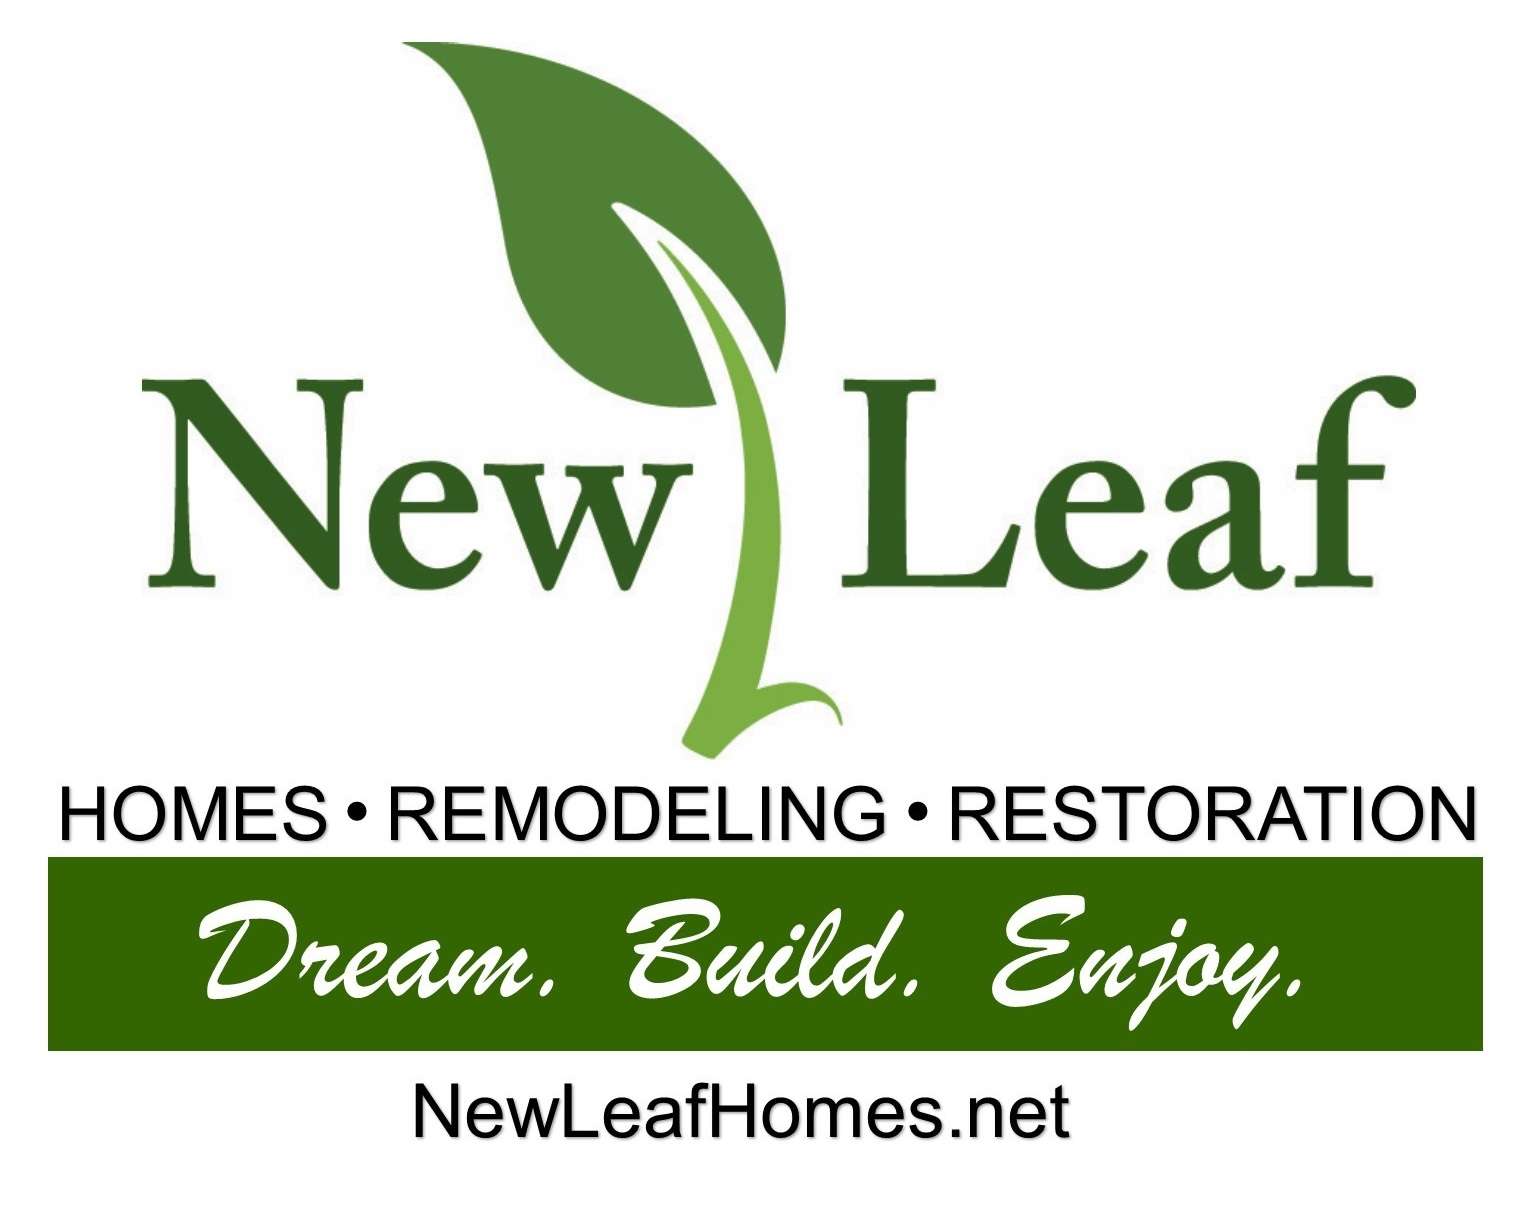 New Leaf Homes LLC Logo